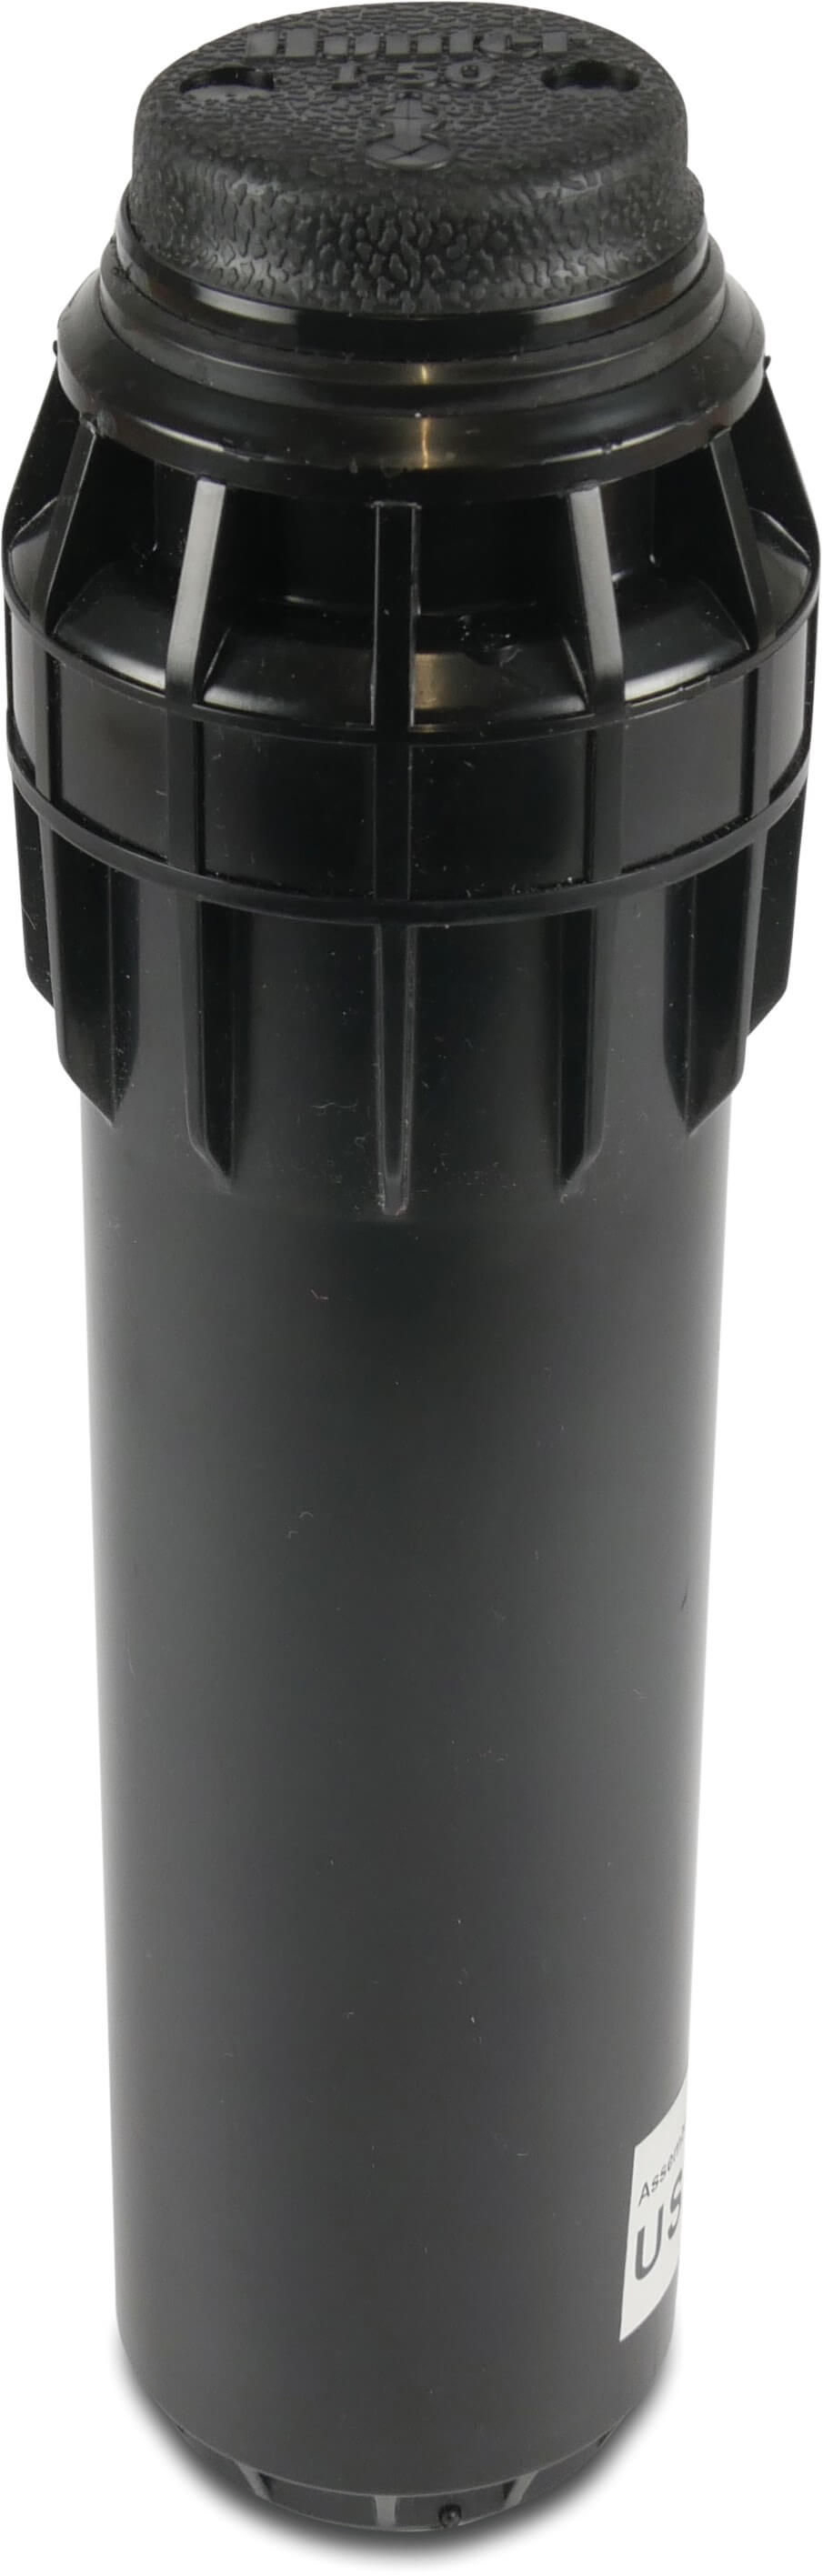 Hunter Pop-up sprinkler plastic 1" male thread 60°- 360° type I-50-06-SS stainless steel